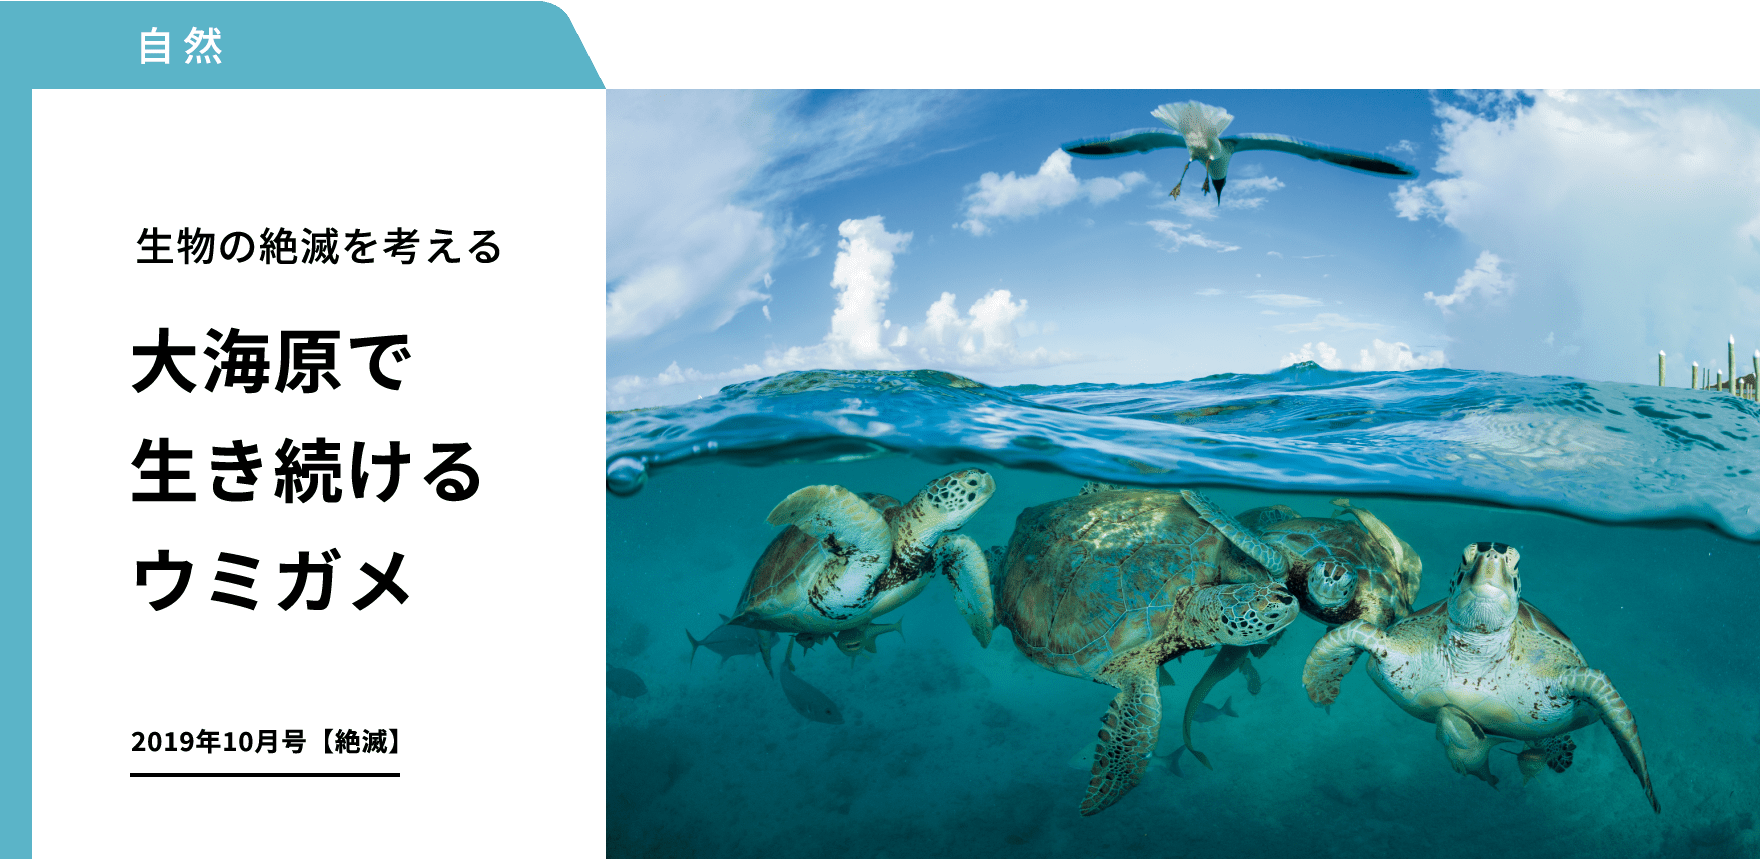 自然 生物の絶滅を考える 大海原で生き続けるウミガメ 2019年10月号【絶滅】